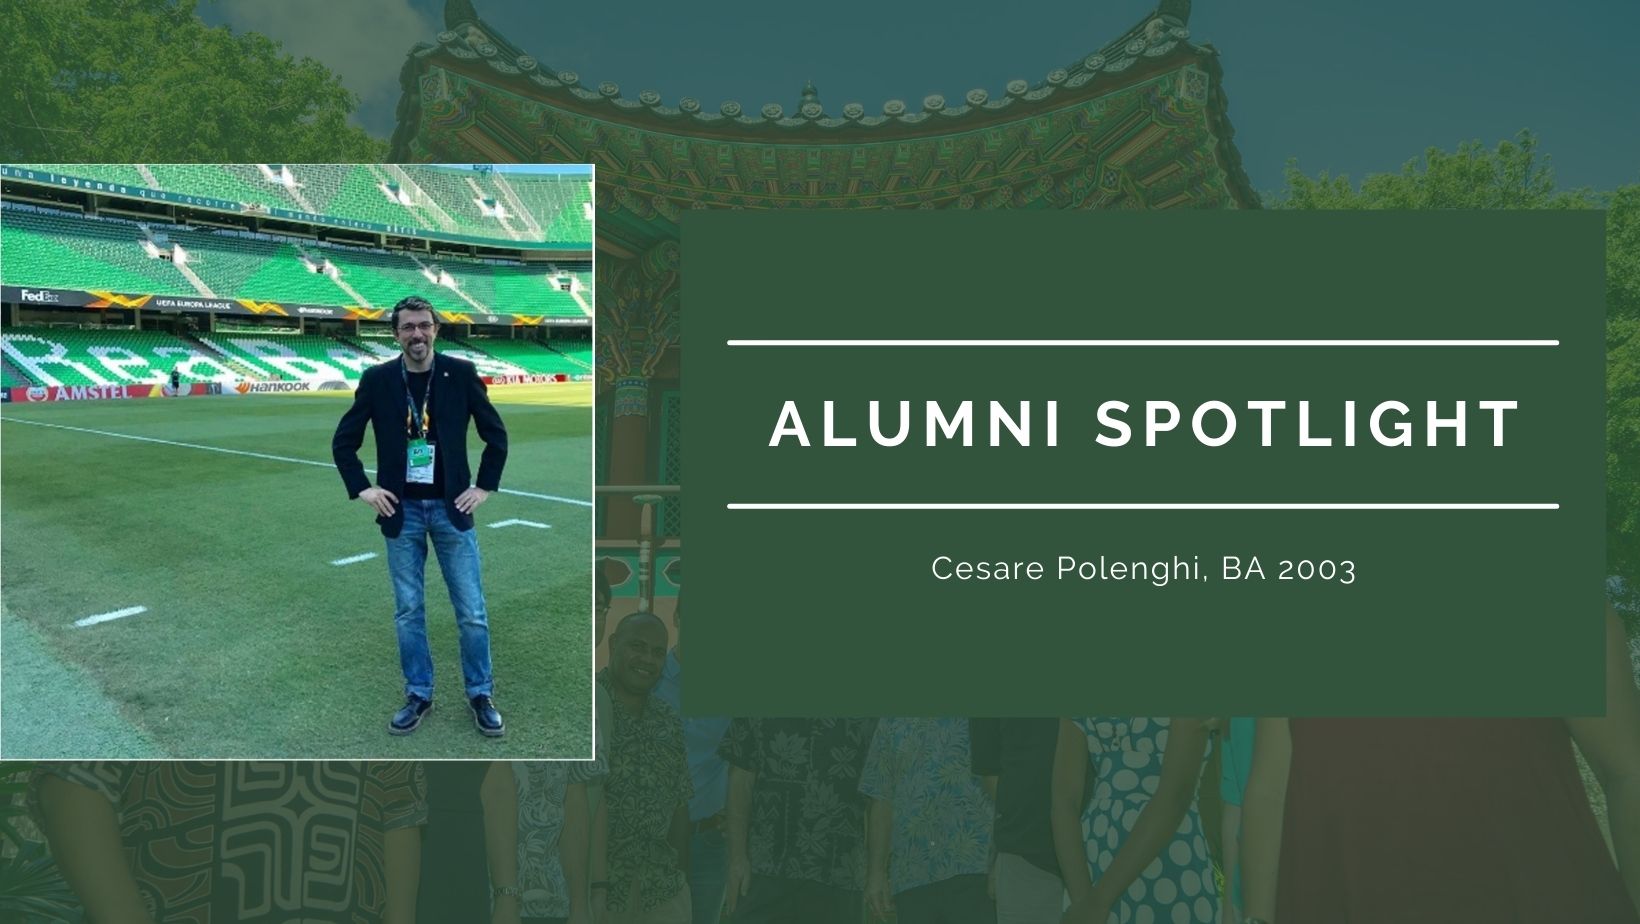 Alumni Spotlight: Cesare Polenghi